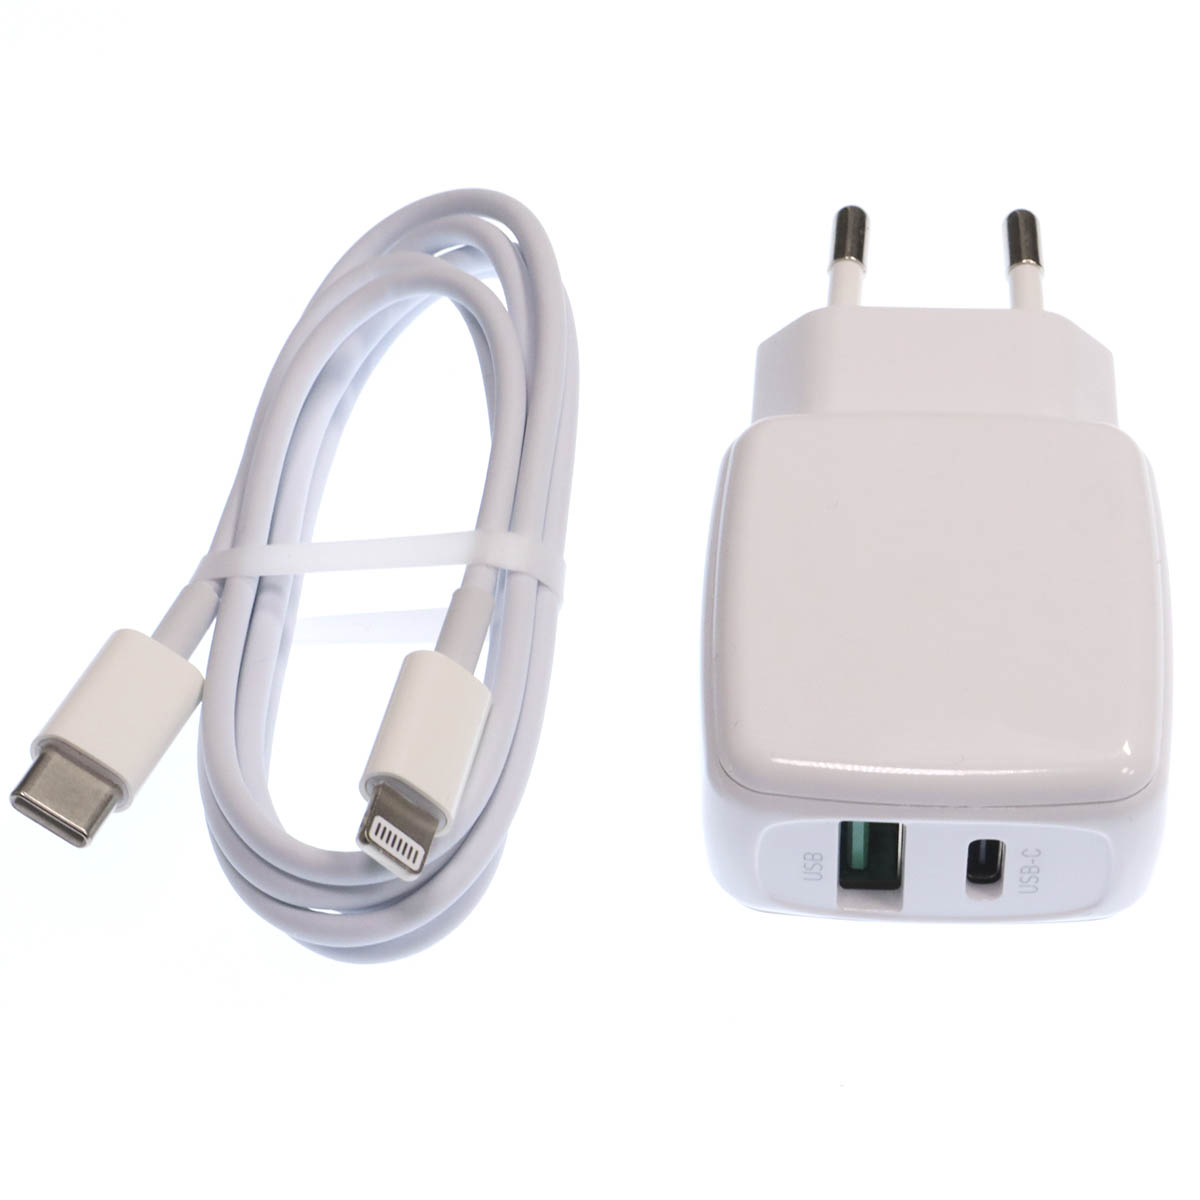 СЗУ (Сетевое зарядное устройство) EARLDOM ES-EU21C-i с кабелем USB Type C на Lightning 8 pin, 20W, 1 USB Type C, 1 USB, длина 1 метр, цвет белый